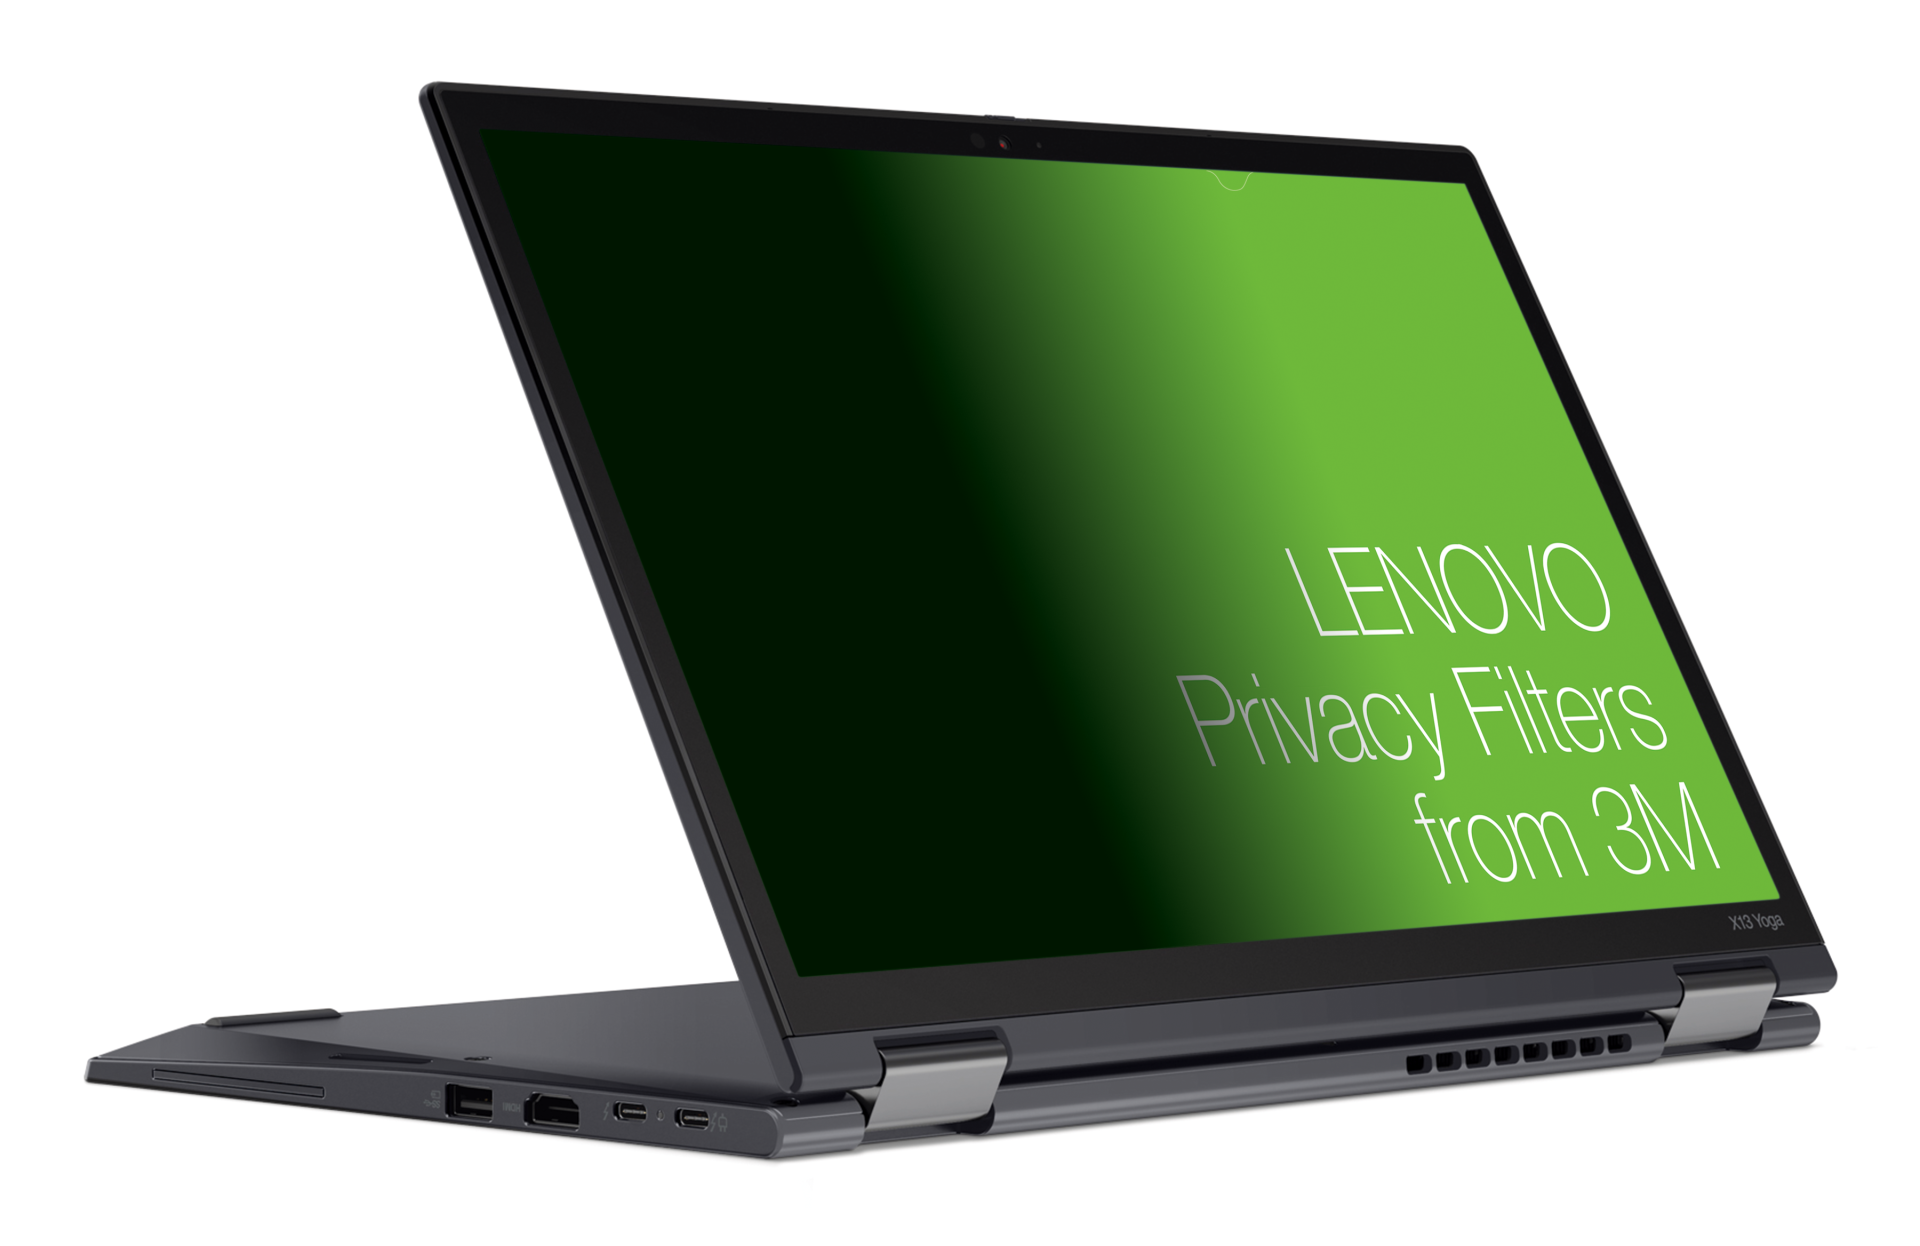 Lenovo 12.3 inç 0302 X12 için Gizlilik Filtresi 3M'den COMPLY Eki ile Çıkarılabilir 4XJ1D33270